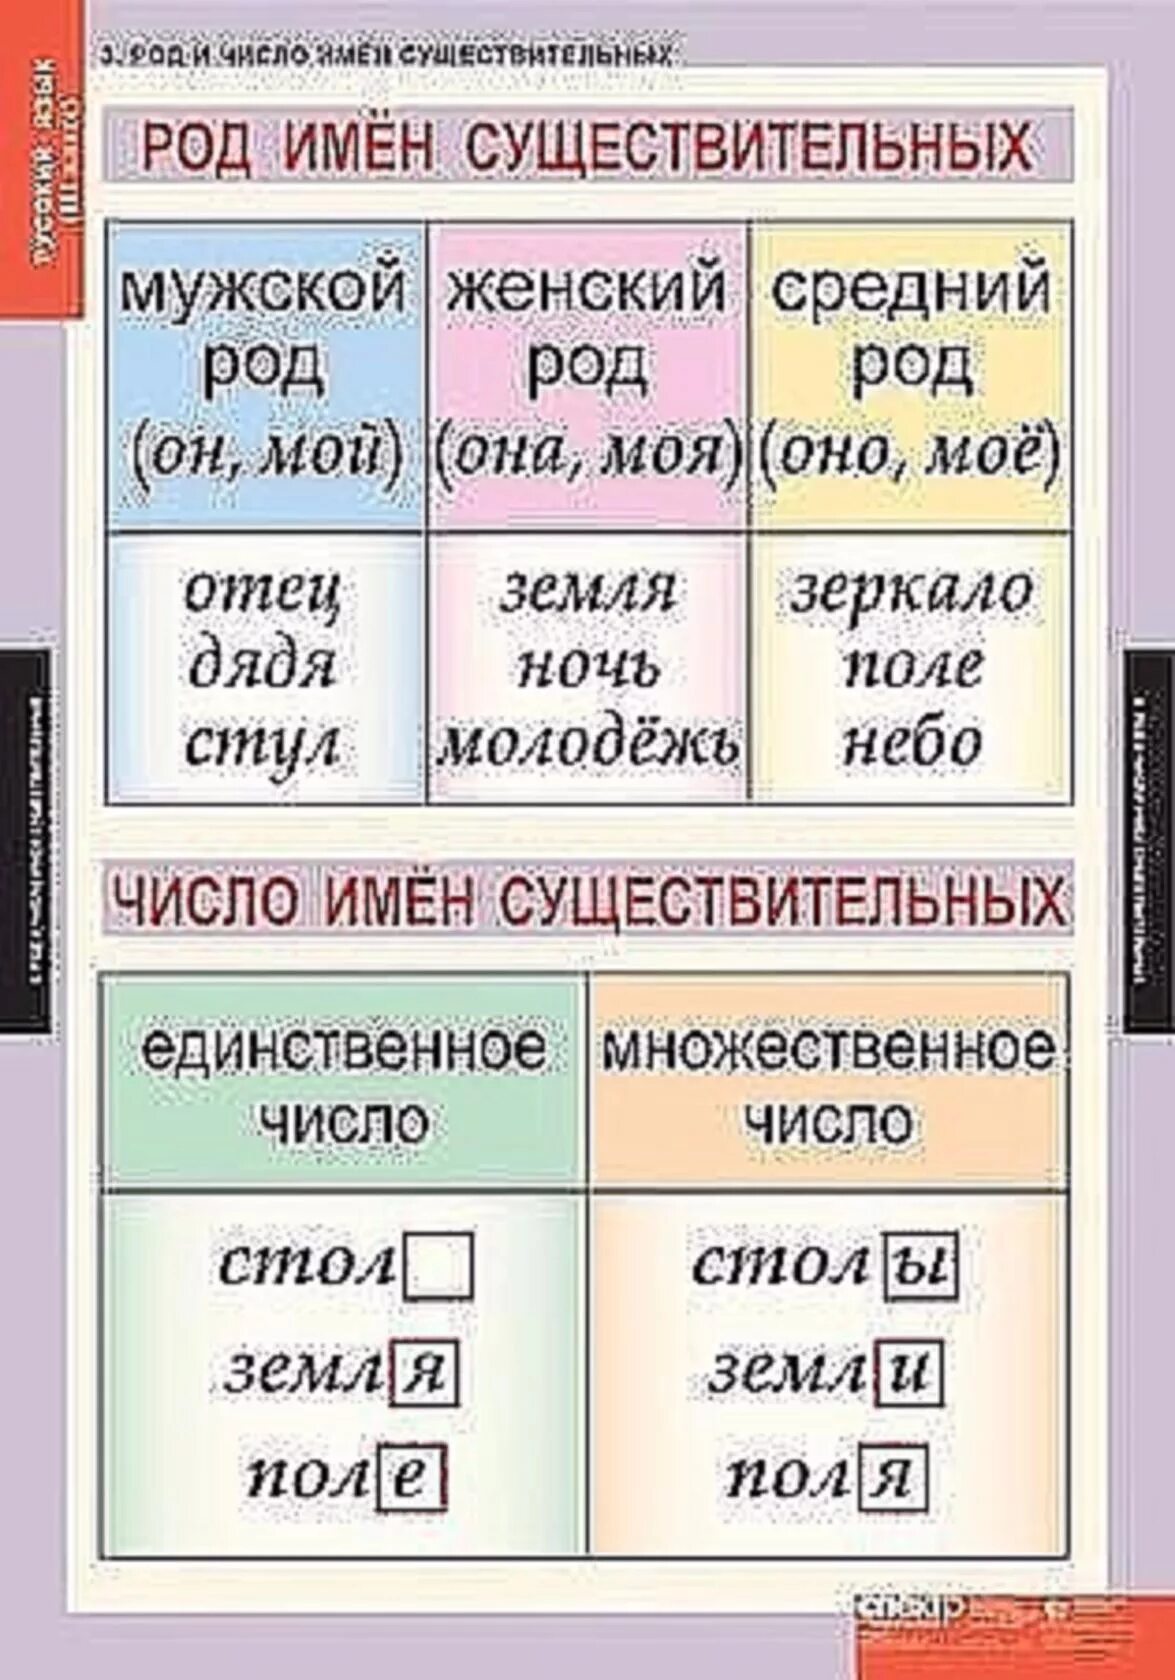 Отметь существительные мужского. Род и число имен существительных. Род и число имен существительных таблица. Число имен существительных таблица. Таблица русского языка.